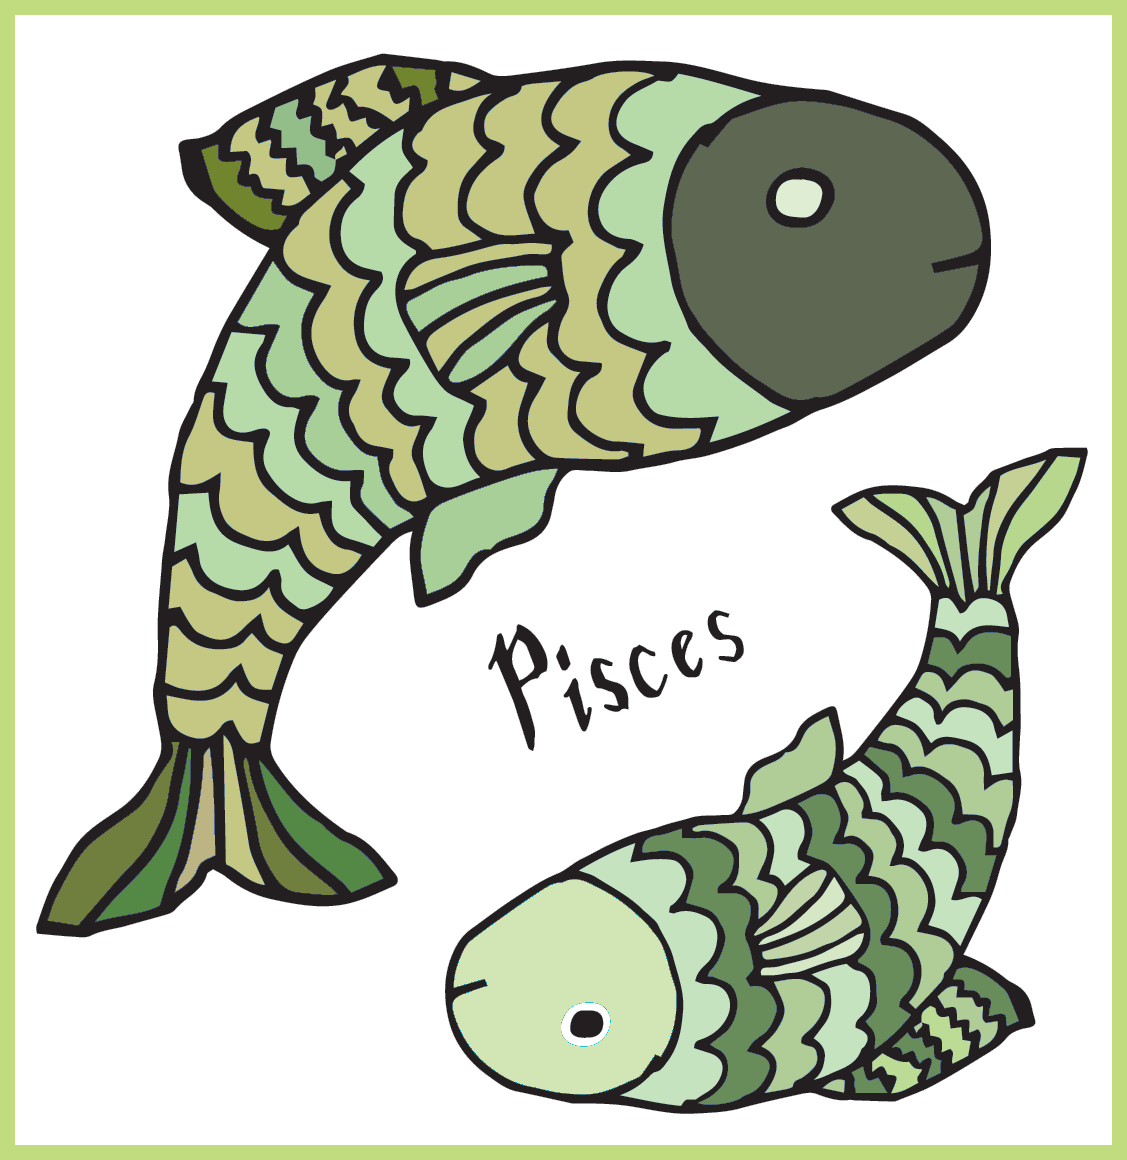 Bir daire içinde yüzen, yüzleri kuyruğa dönük, yeşil solungaçlara sahip ve üzerinde Balık kelimesi bulunan iki balık